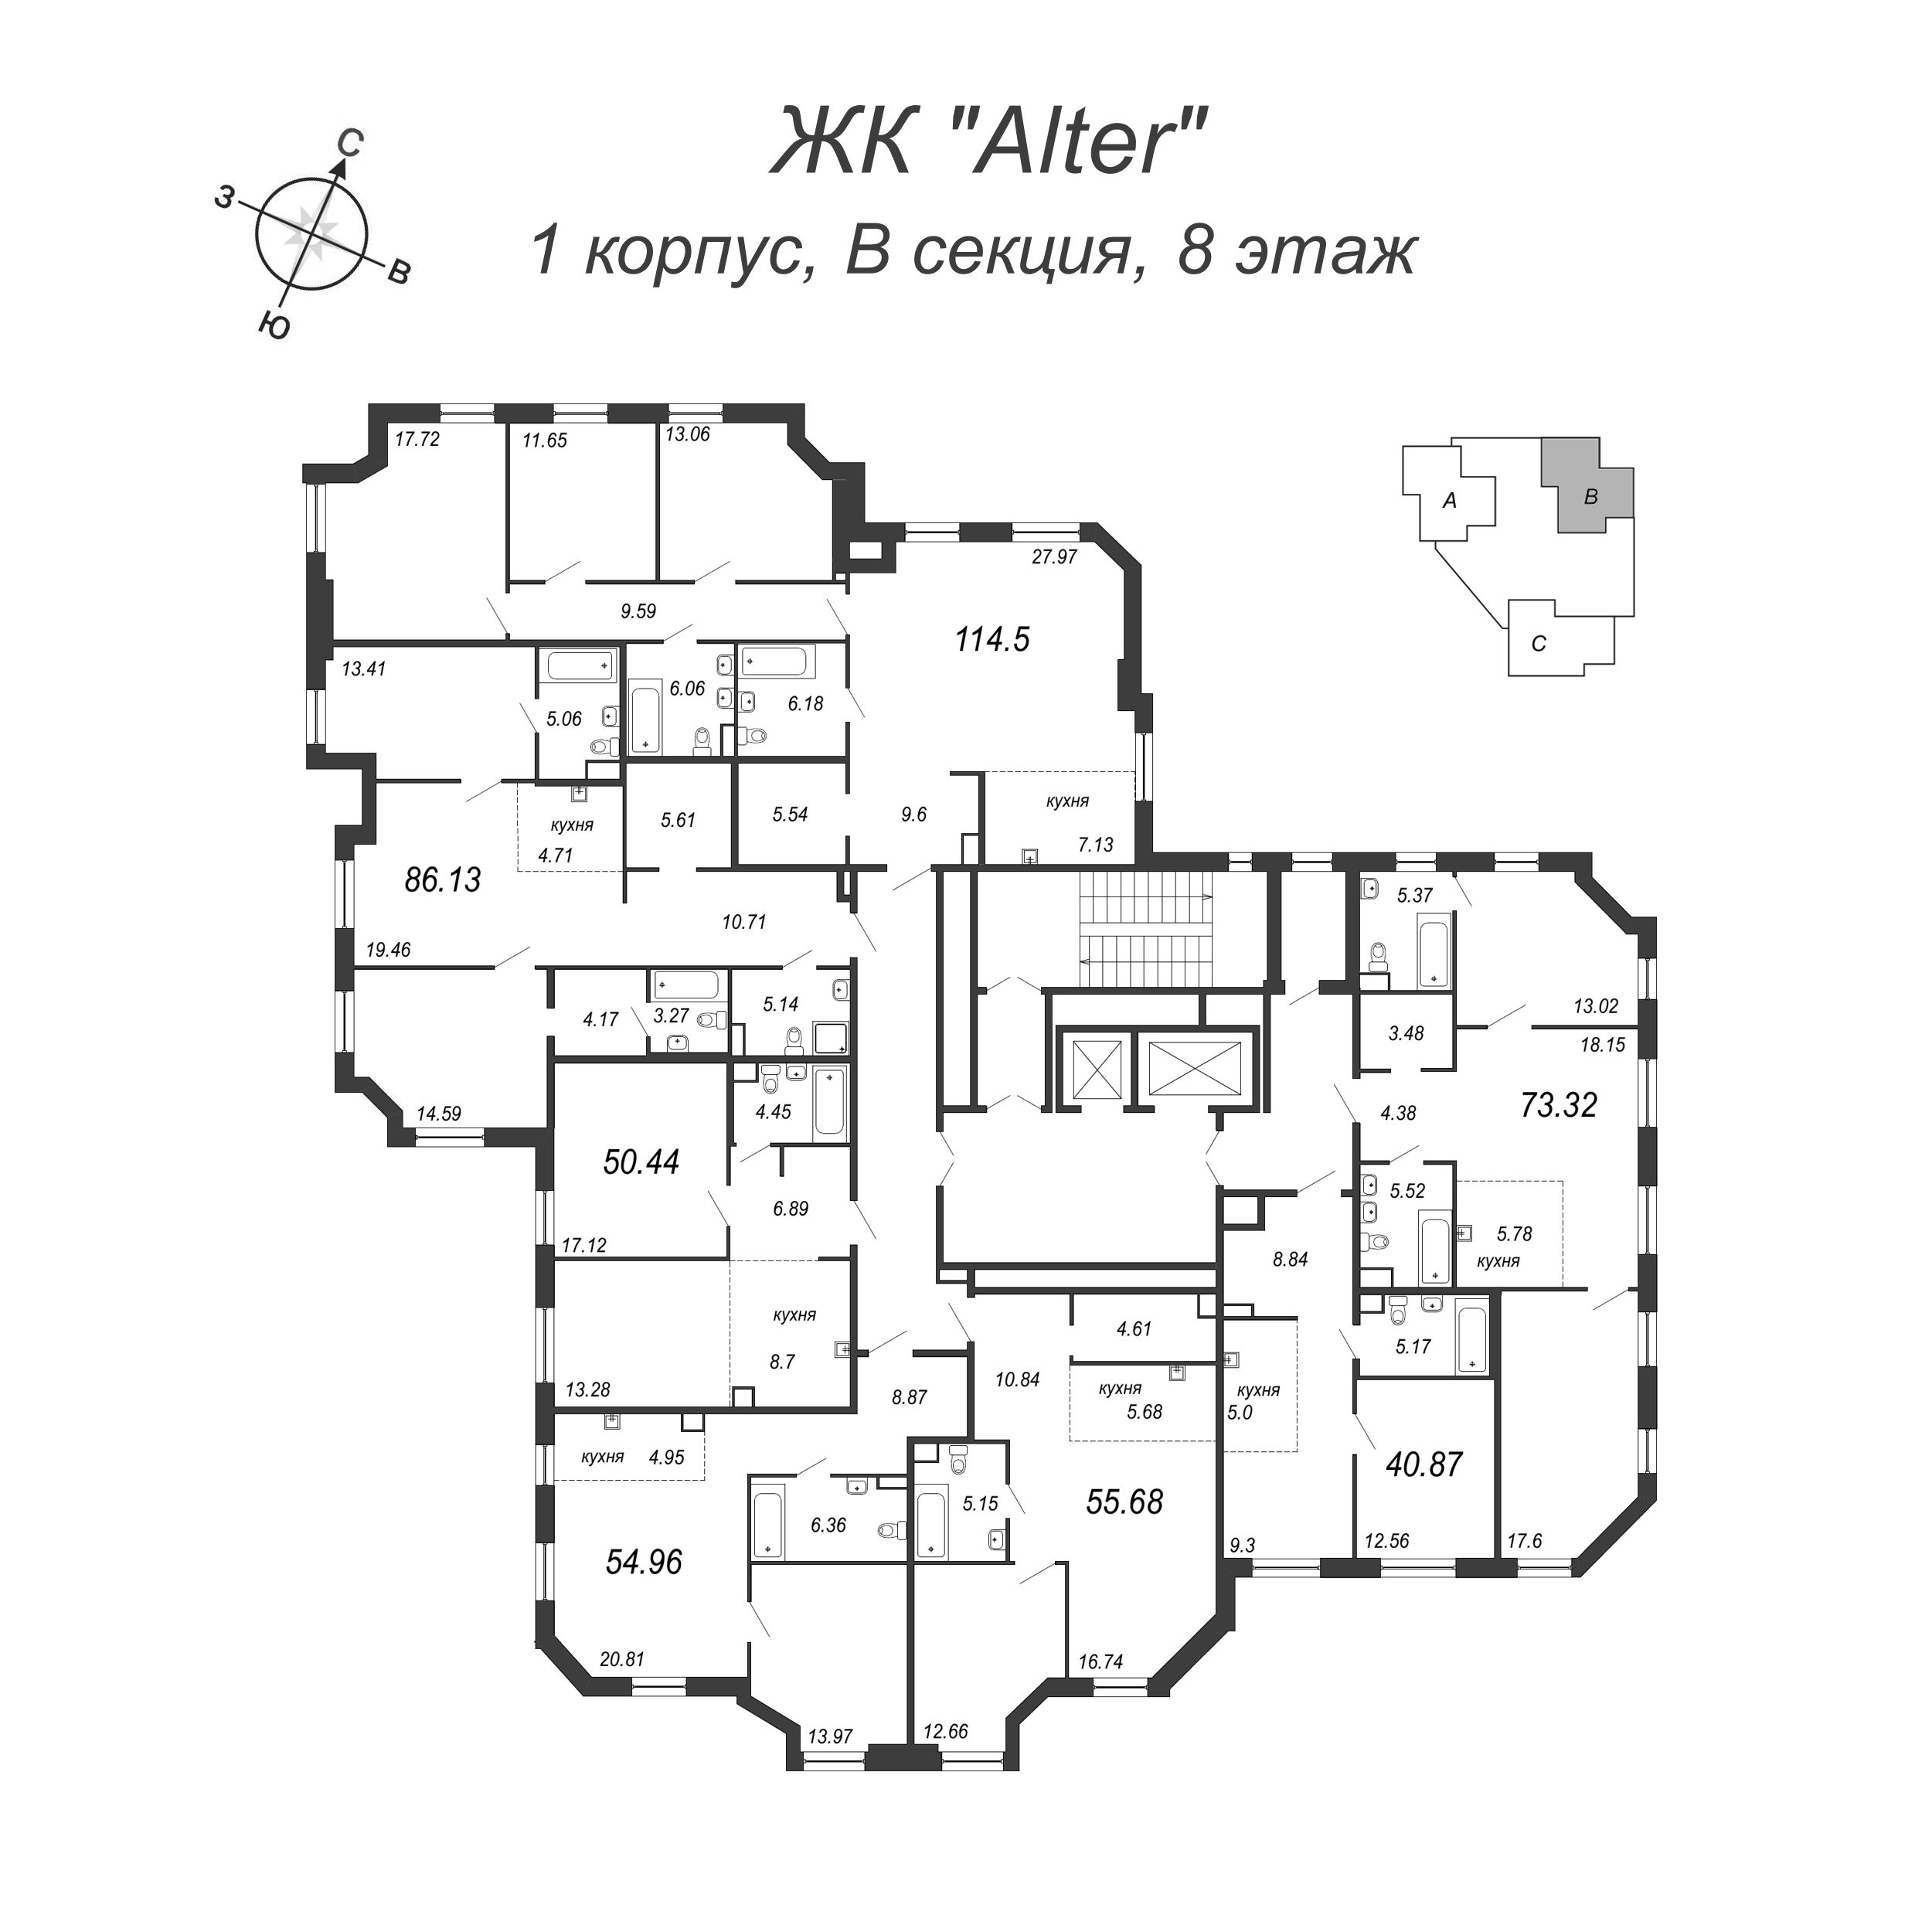 4-комнатная (Евро) квартира, 115.3 м² в ЖК "Alter" - планировка этажа